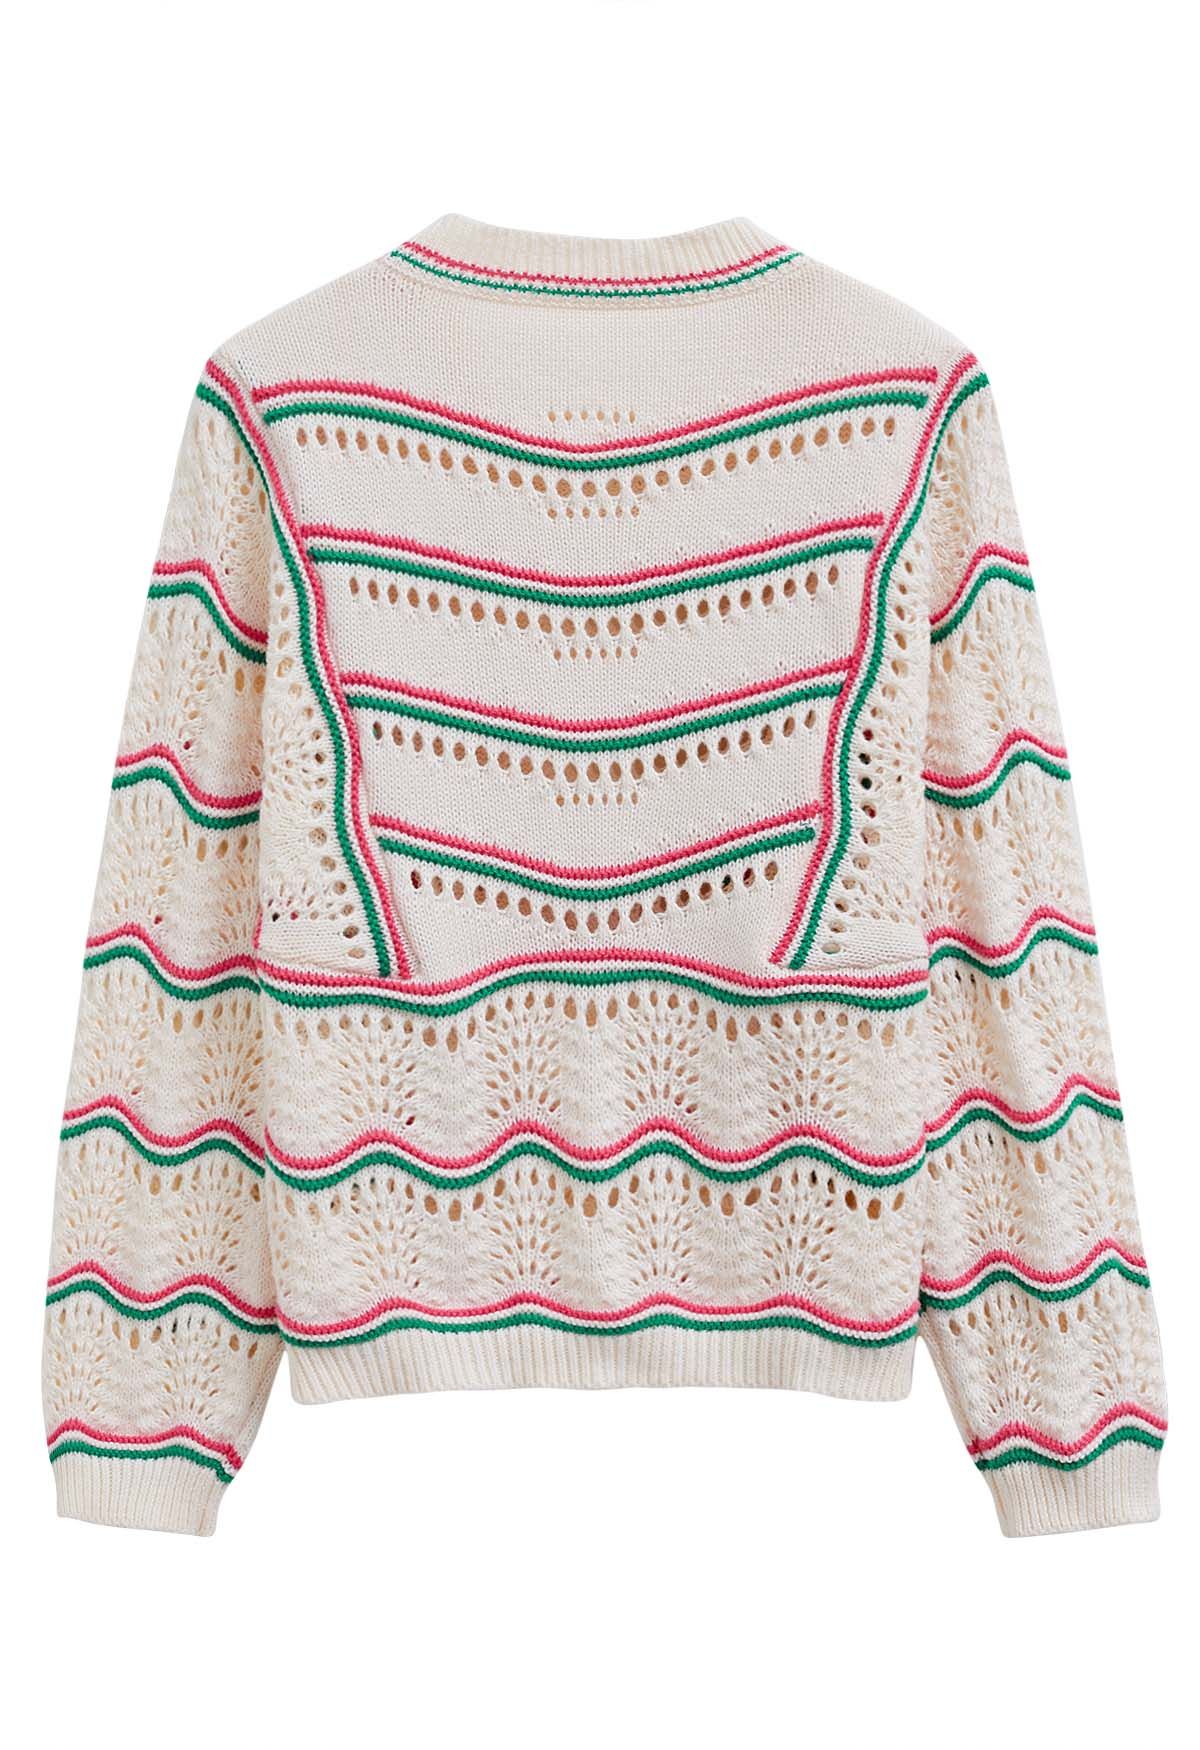 Pull en tricot ajouré à lignes ondulées contrastées